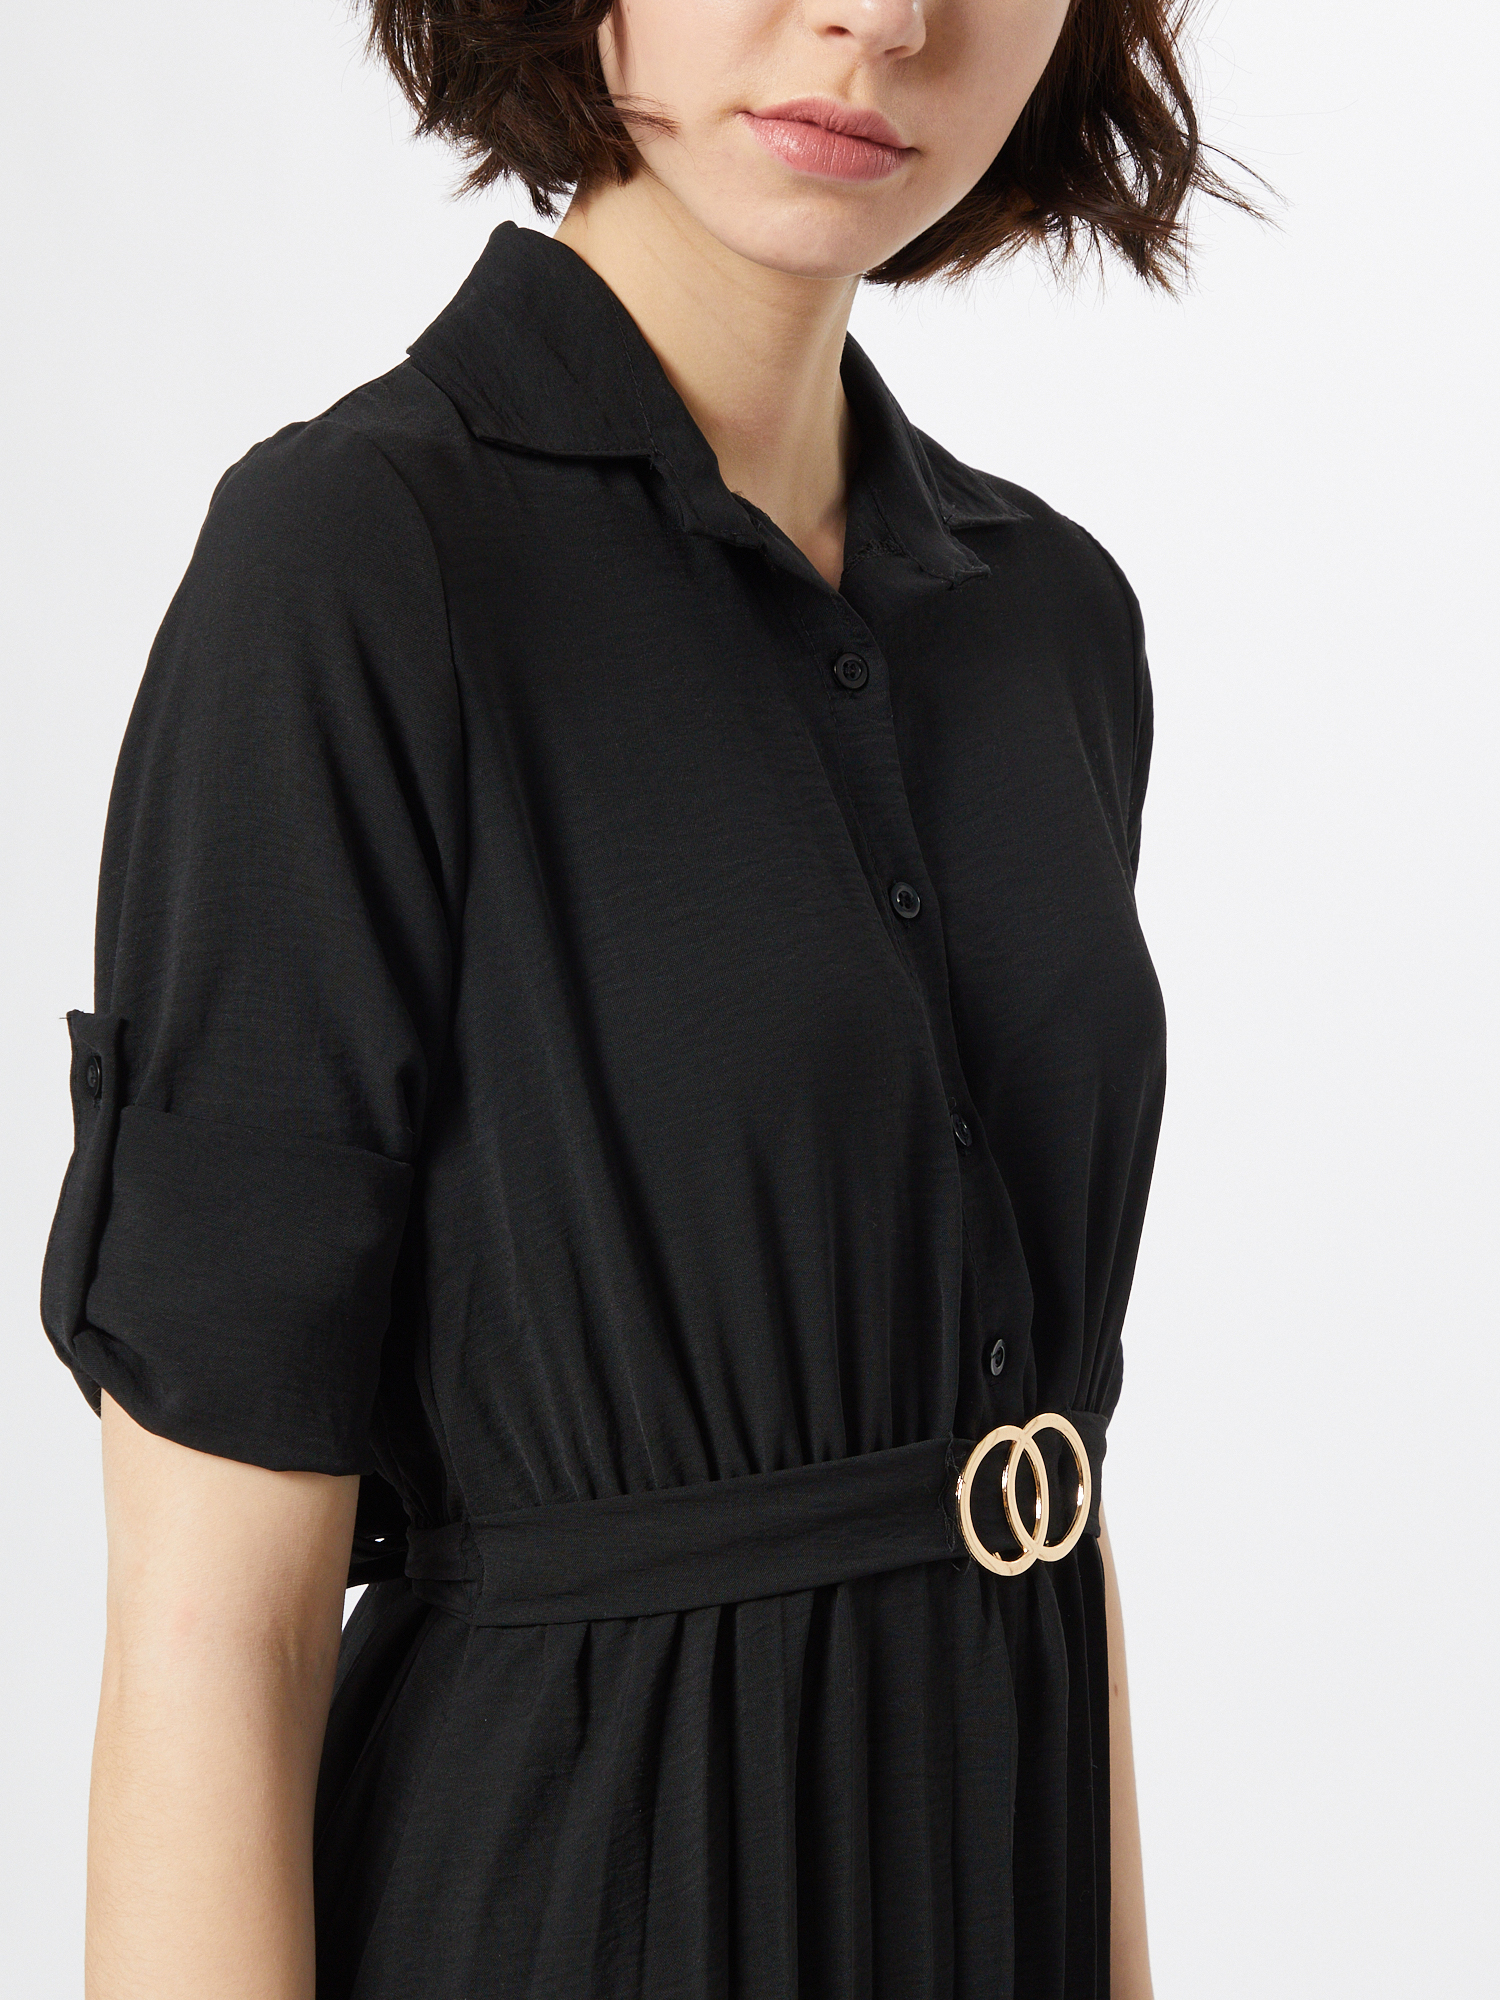 Specjalne okazje Kobiety Mela London Sukienka koszulowa w kolorze Czarnym 